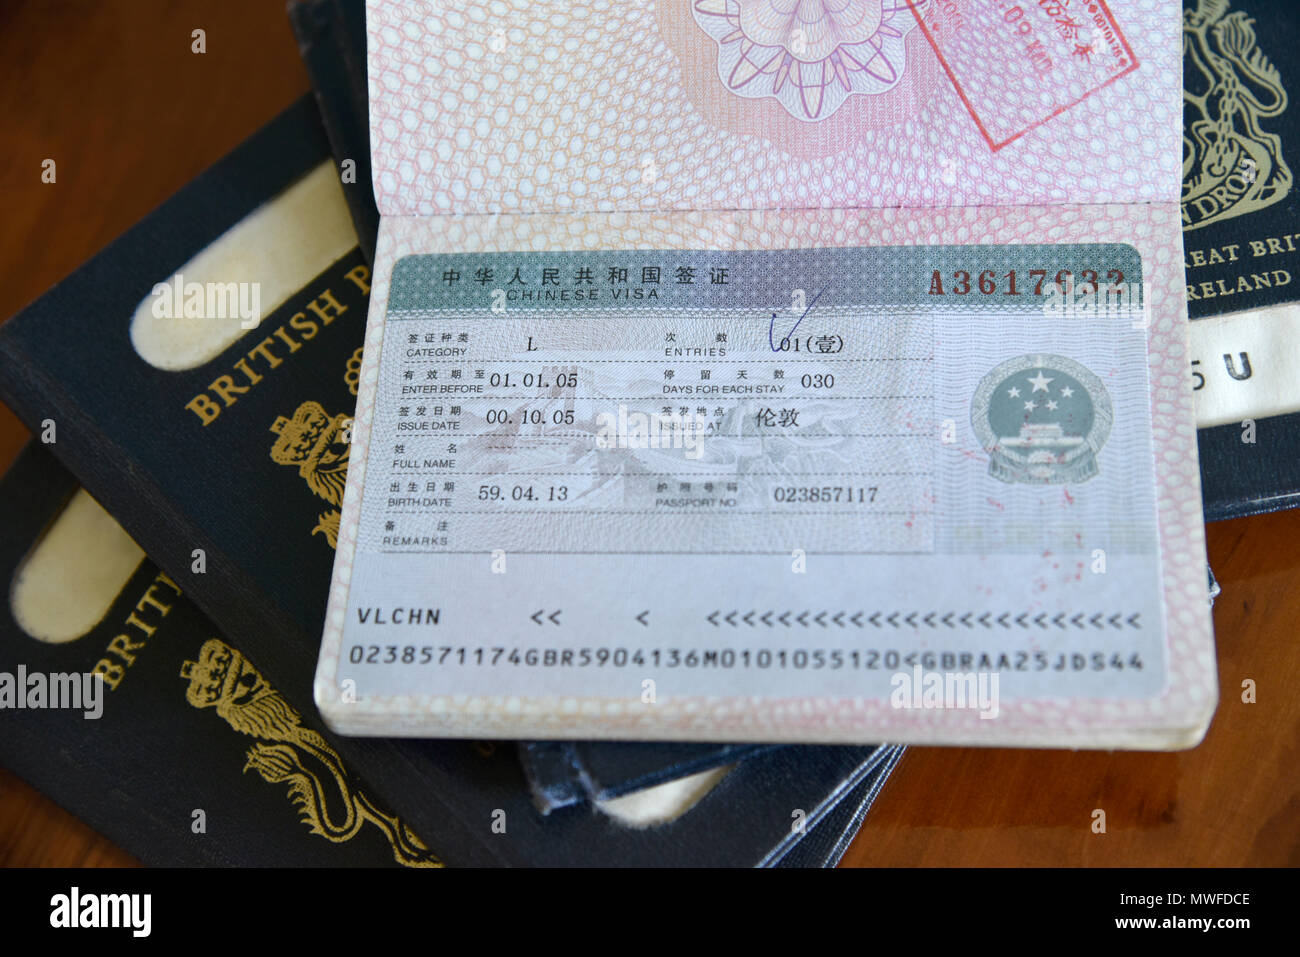 Unione british passaporto con visto cinese timbrato all'interno e il nome tranciati Foto Stock